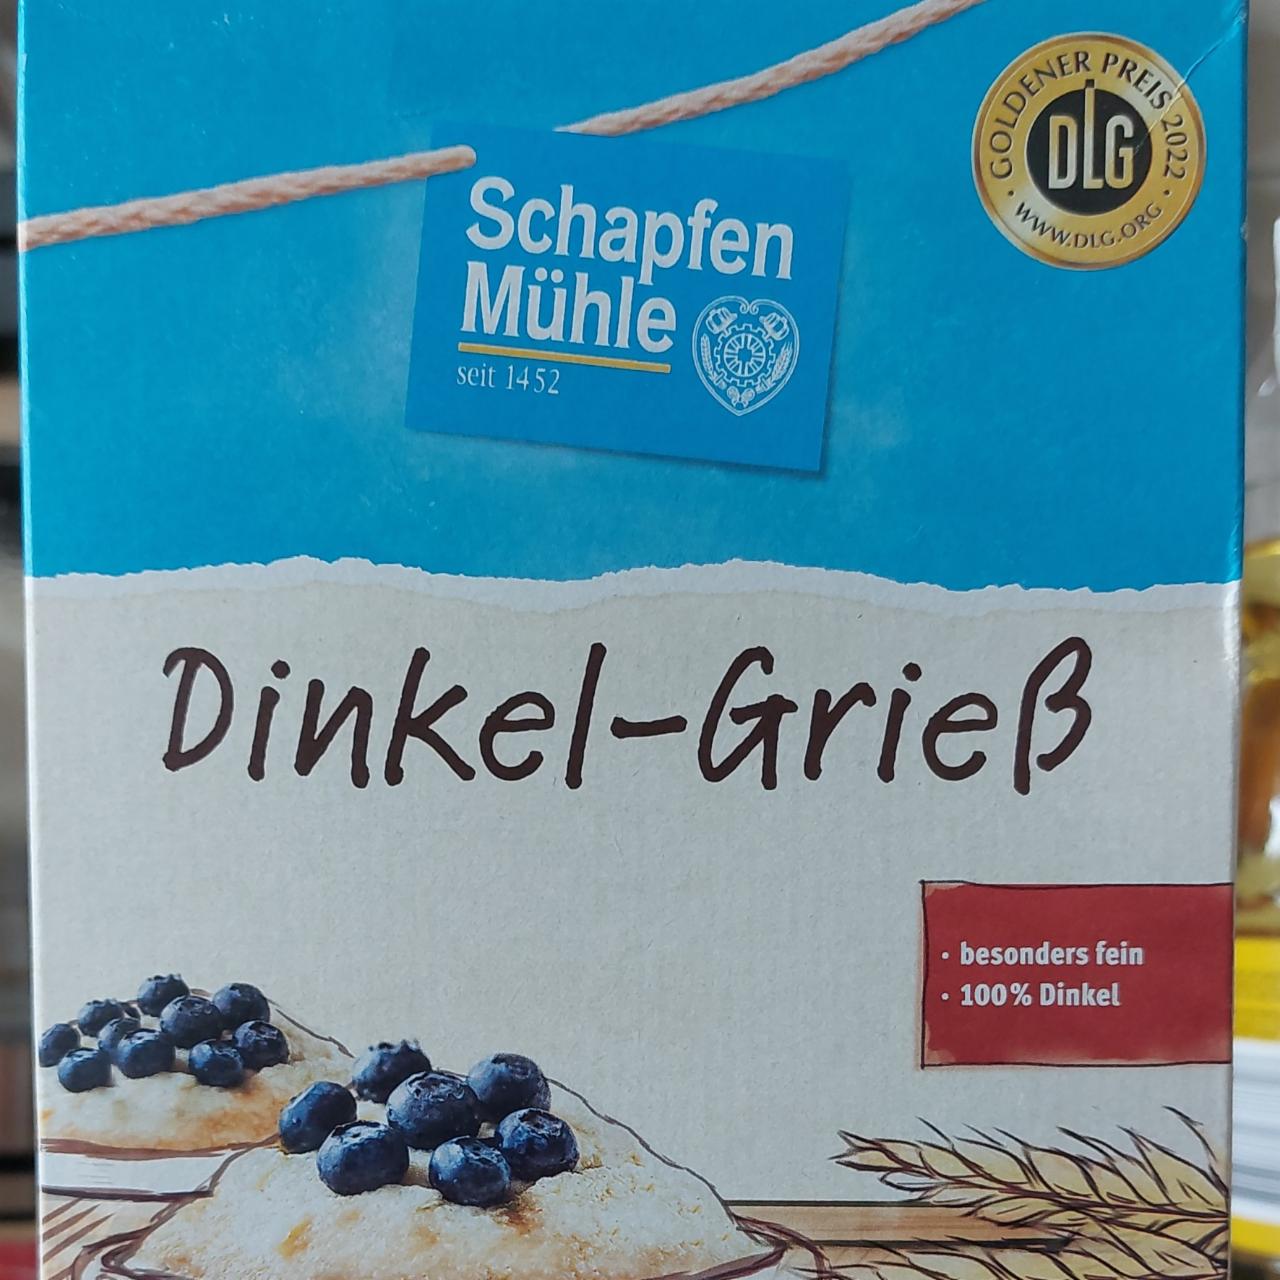 Fotografie - Dinkel-Grieß Schapfen Mühle